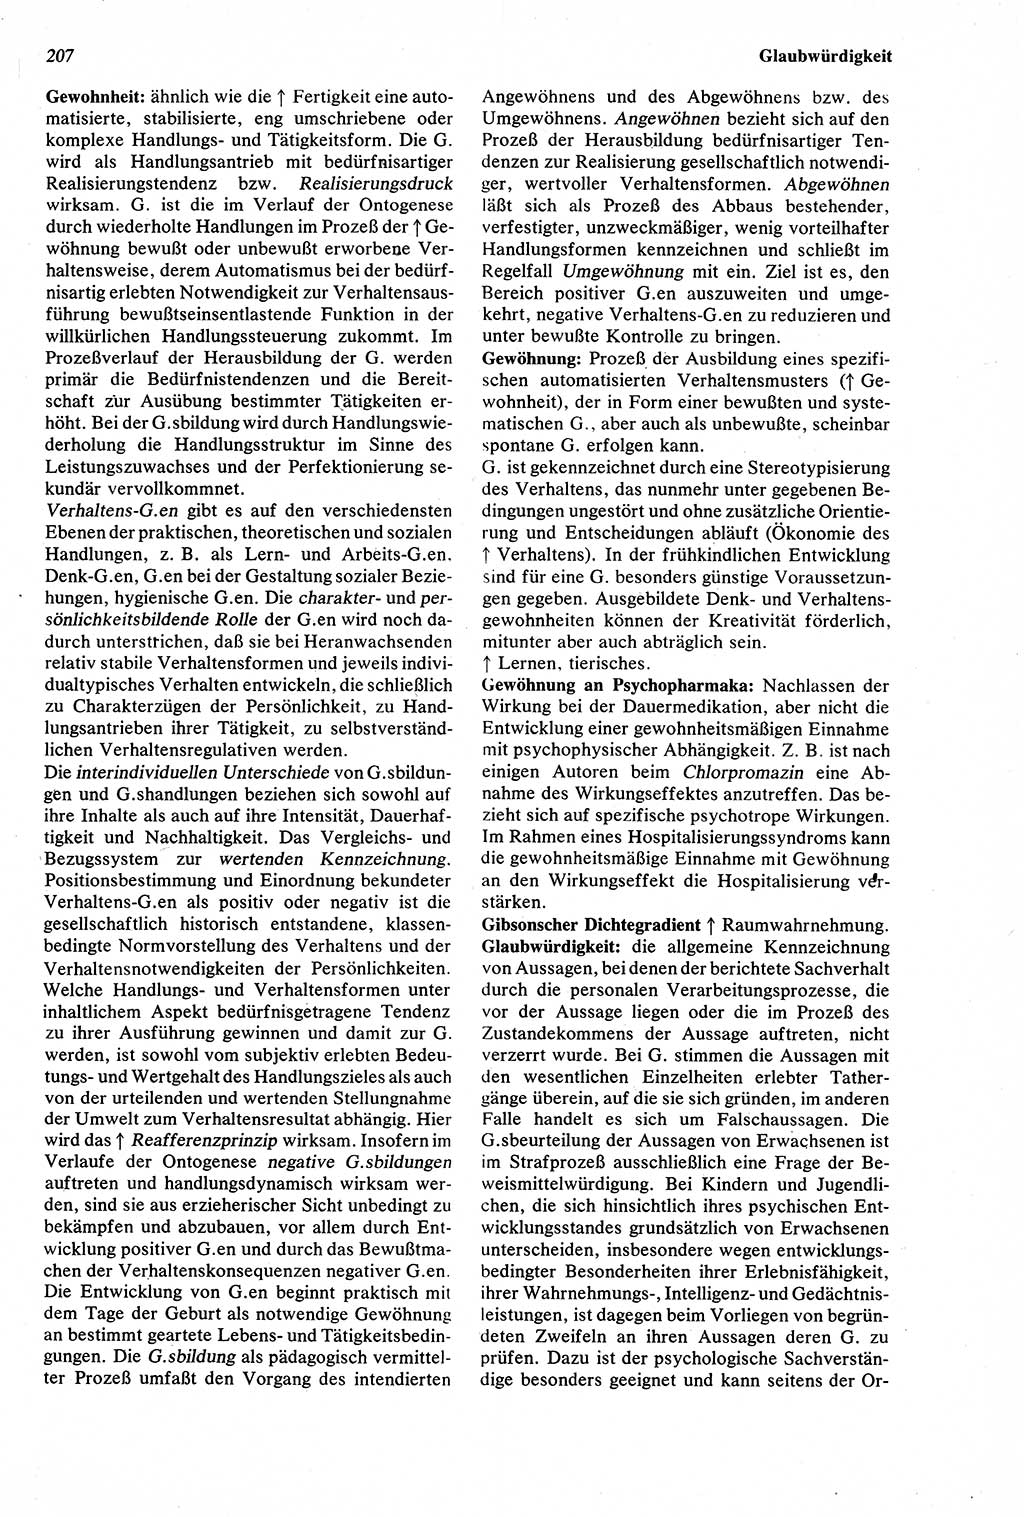 Wörterbuch der Psychologie [Deutsche Demokratische Republik (DDR)] 1976, Seite 207 (Wb. Psych. DDR 1976, S. 207)